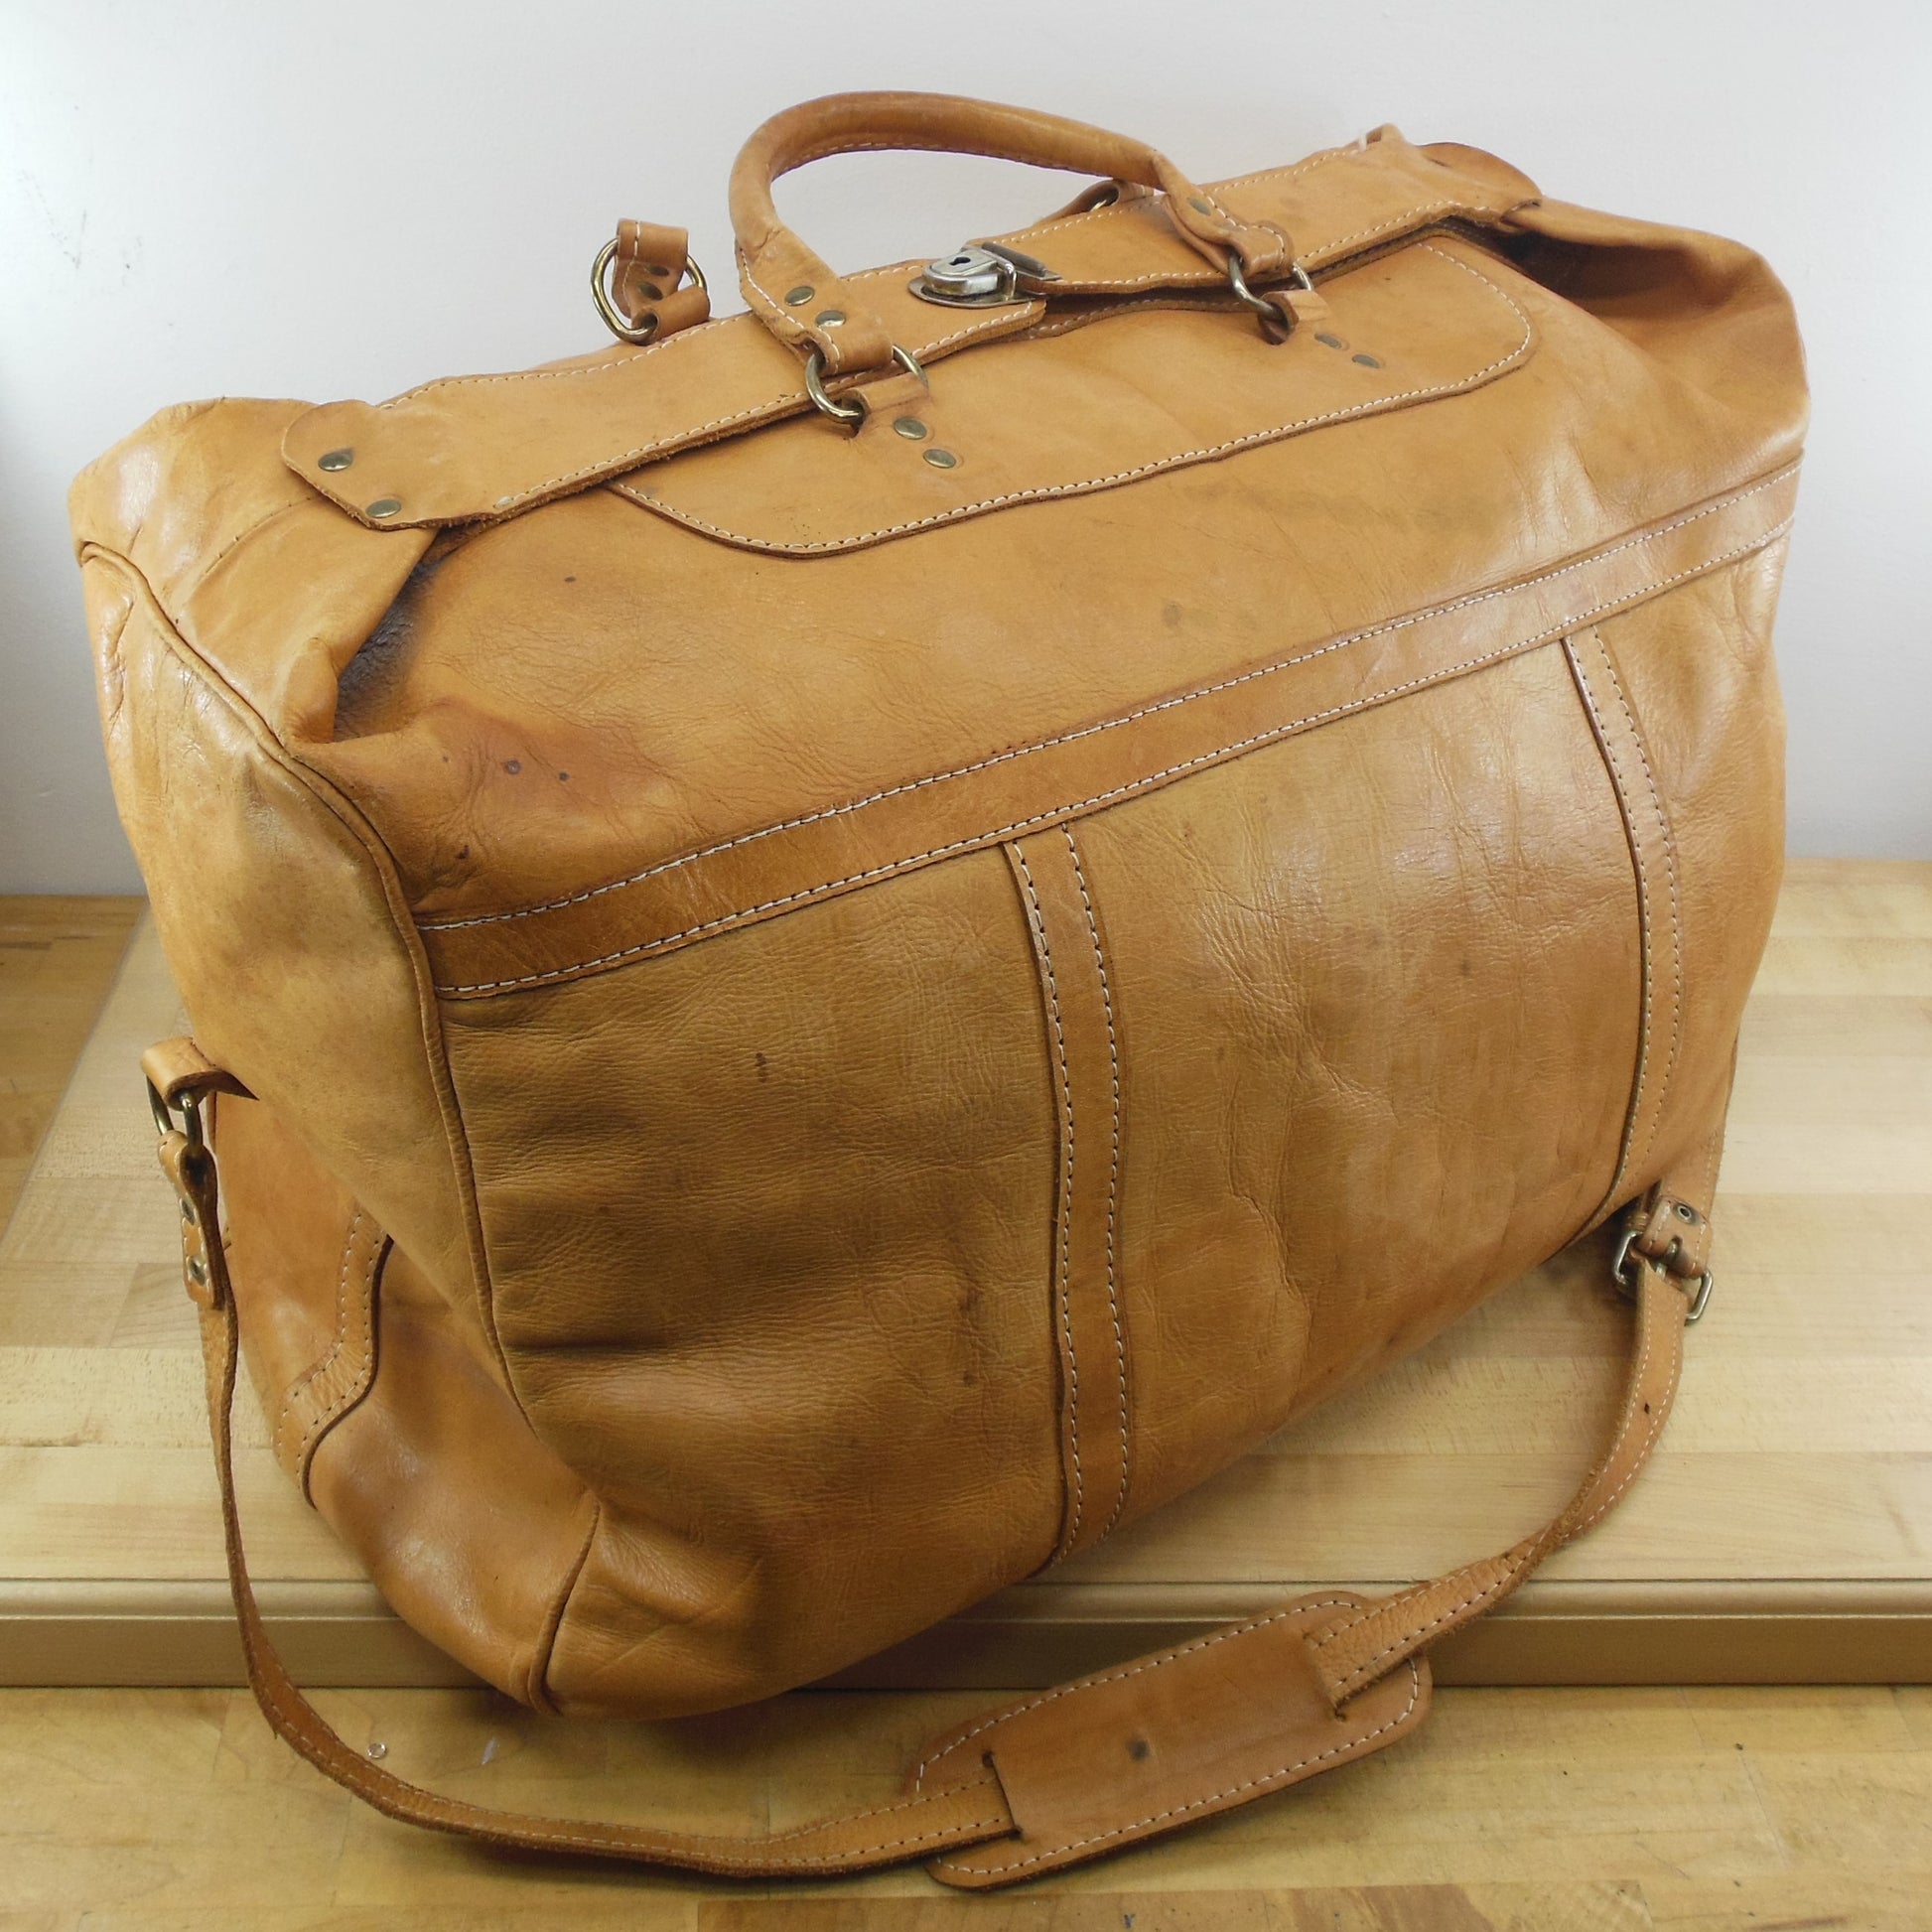 MR Canoa Industria Argentina Natural Leather Large Duffel Travel Bag Shoulder Strap